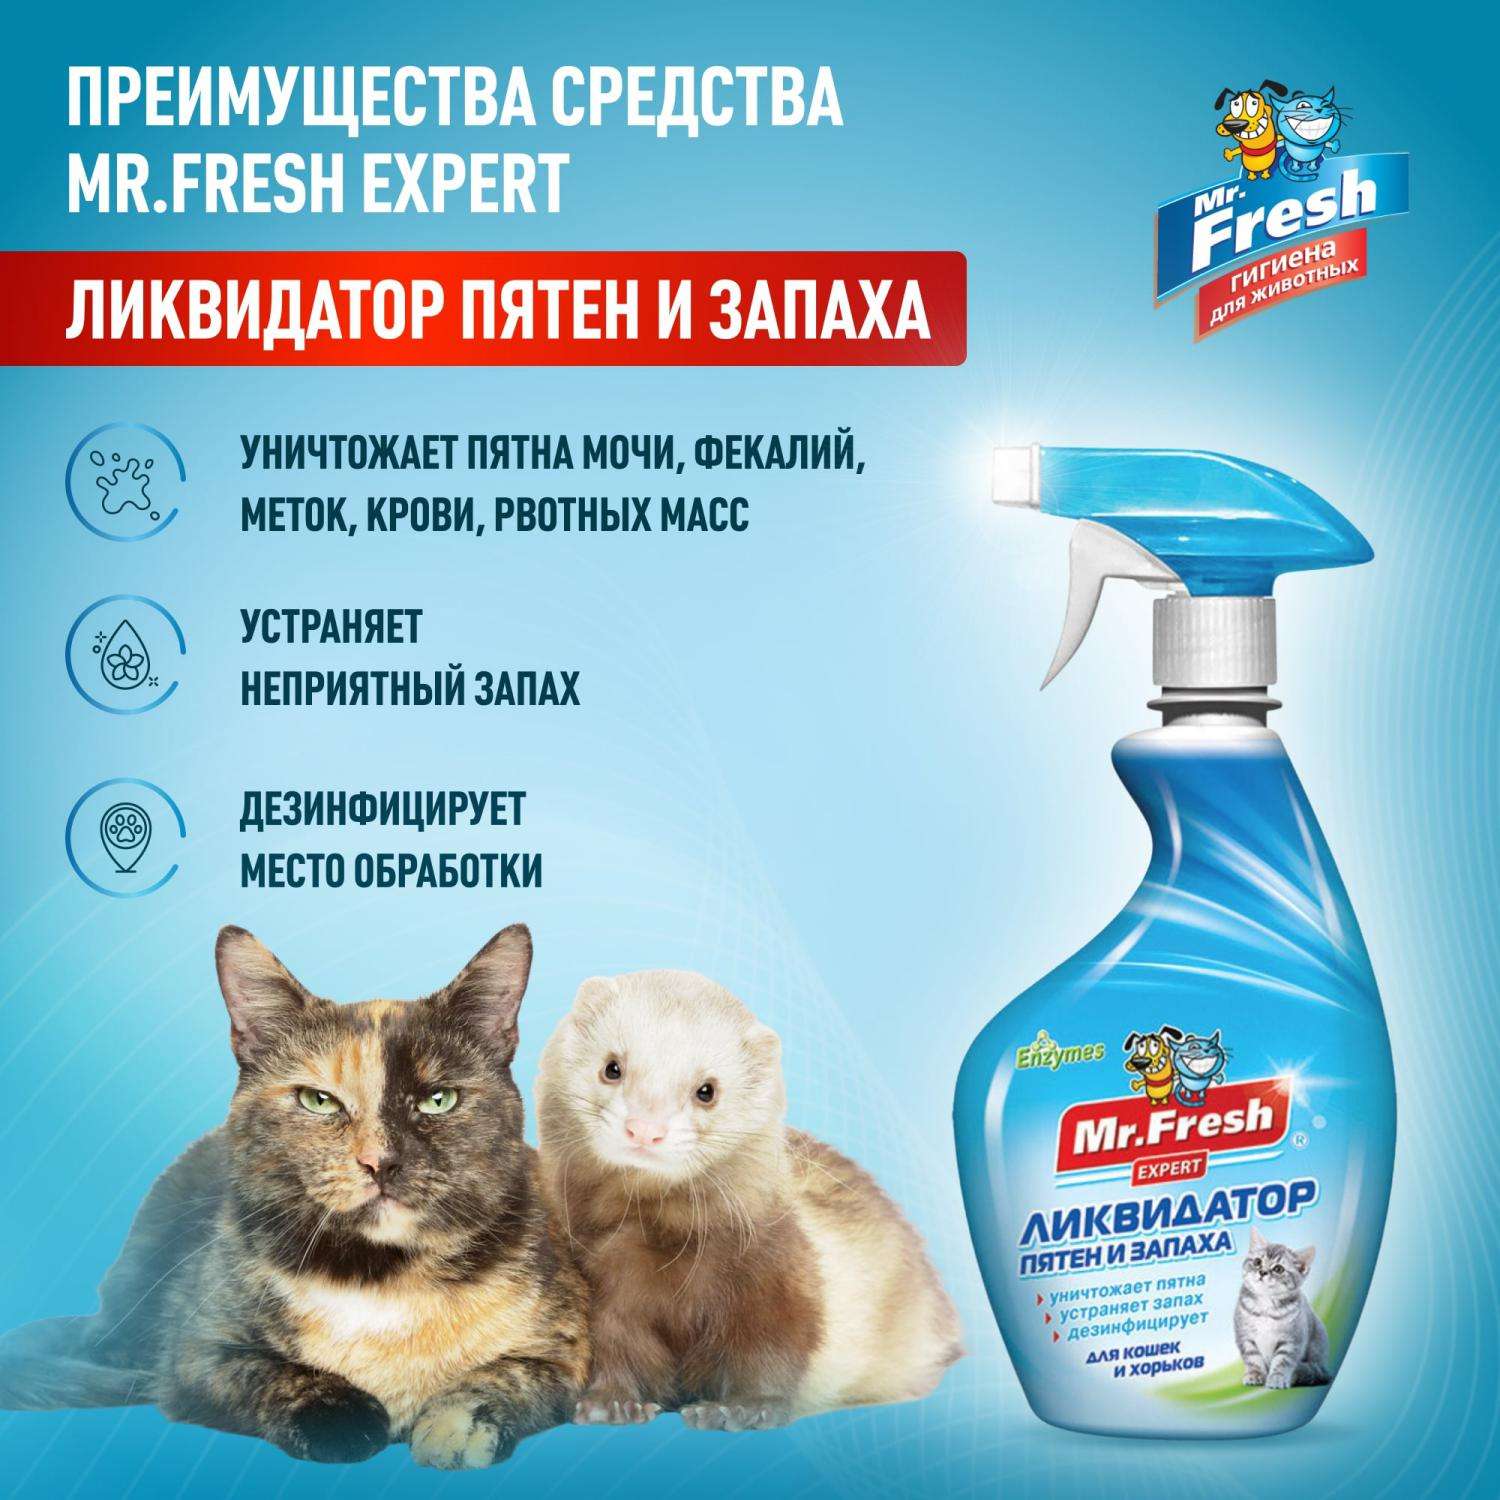 Спрей для кошек Mr.Fresh Expert 3в1 ликвидатор пятен и запаха 500мл - фото 2